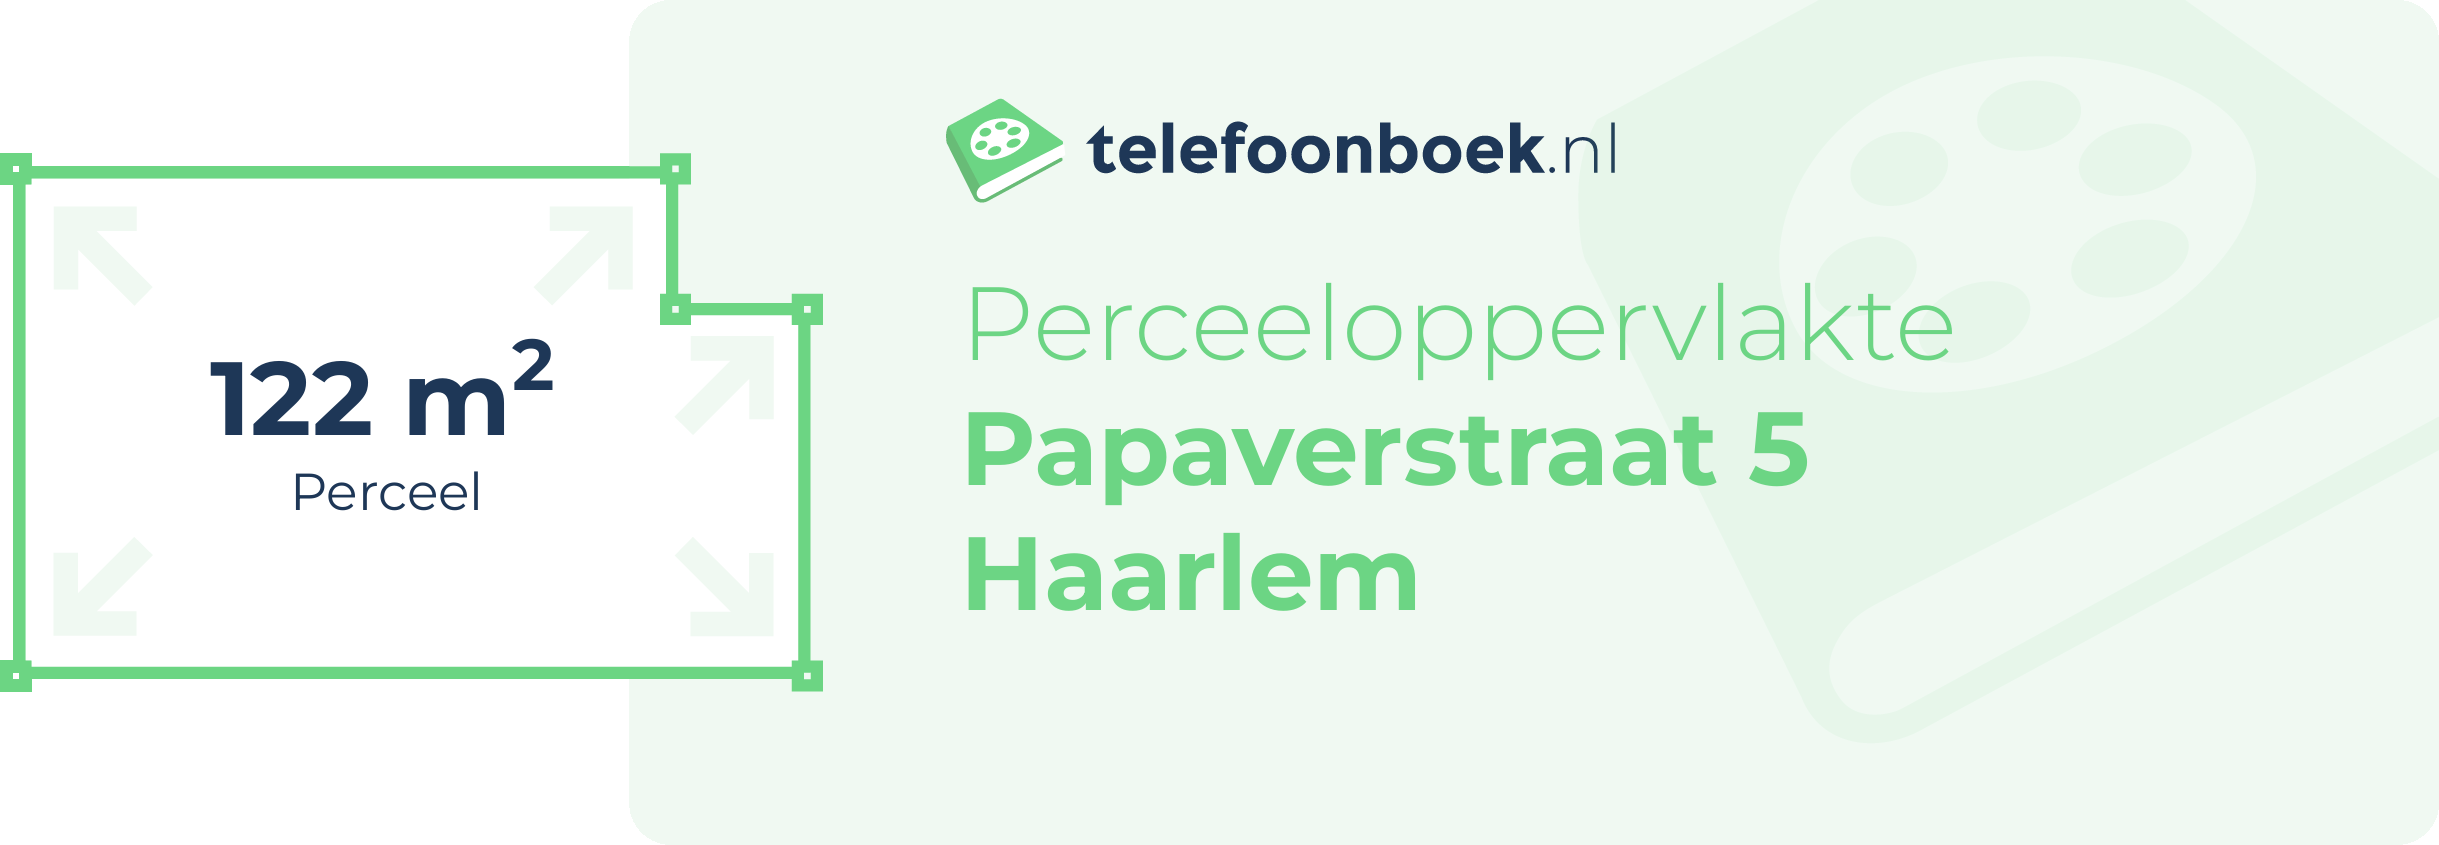 Perceeloppervlakte Papaverstraat 5 Haarlem